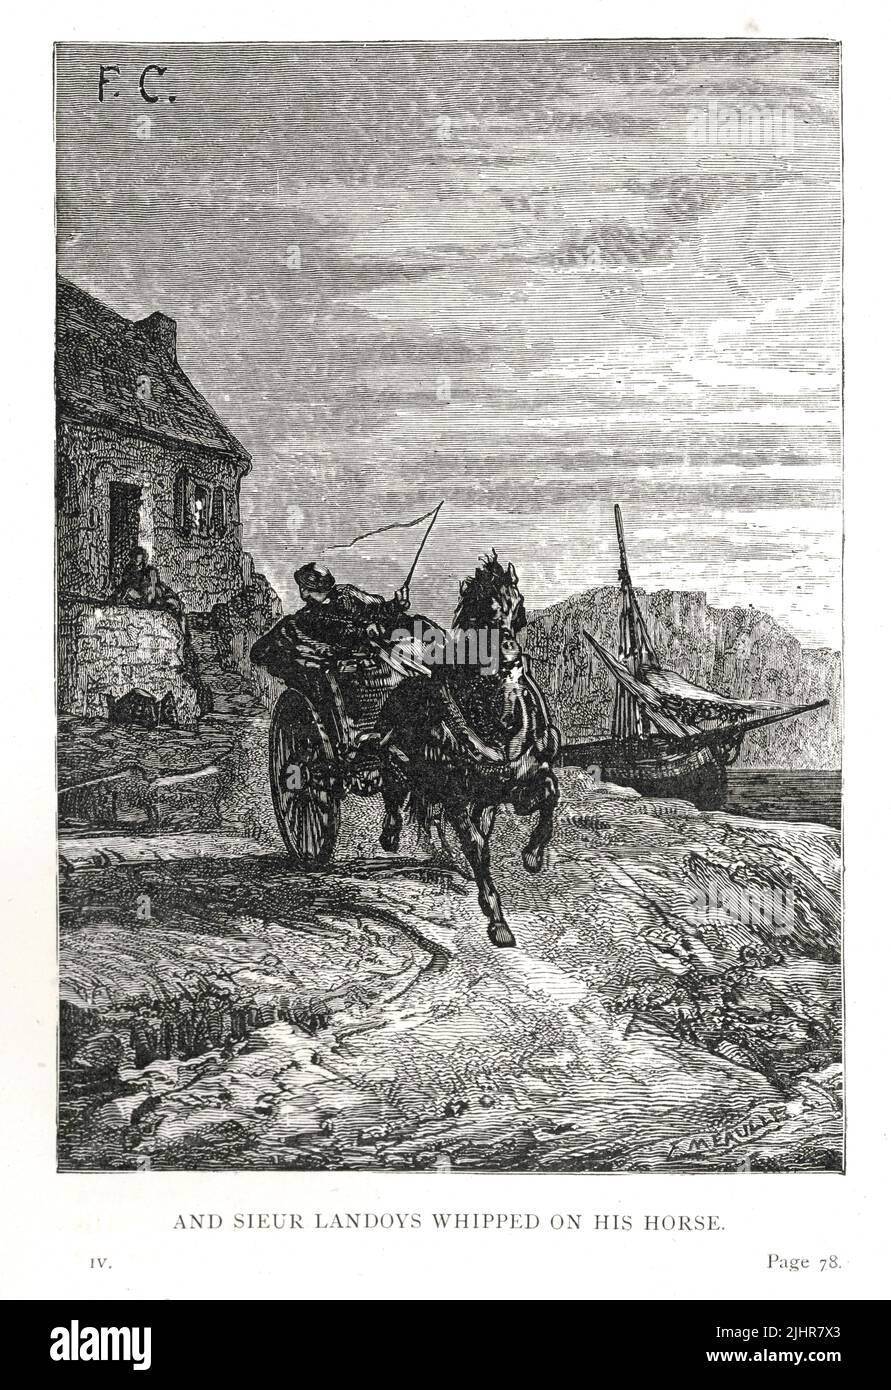 Sieur Landoys llama a Gilliatt: 'Fue, de hecho, Sieur Landoys, que pasaba a lo largo de la carretera [...] ' Hay noticias, Gilliatt.' [...] ' ¿Qué quiere decir con eso?' ' Ve a la casa, y aprenderás.' Y Sieur Landoys azotó sobre su caballo. Primera parte, Libro IV, capítulo VII Ilustración de un conjunto de 56 grabados publicados en la edición inglesa de 'Les Travailleurs de la Mer', de Victor Hugo, publicado en 1869 por Sampson Low, Son y Marston. Ilustrador: François-Nicolas Chifflart. Grabador: Fortuné Méaulle. Foto de stock